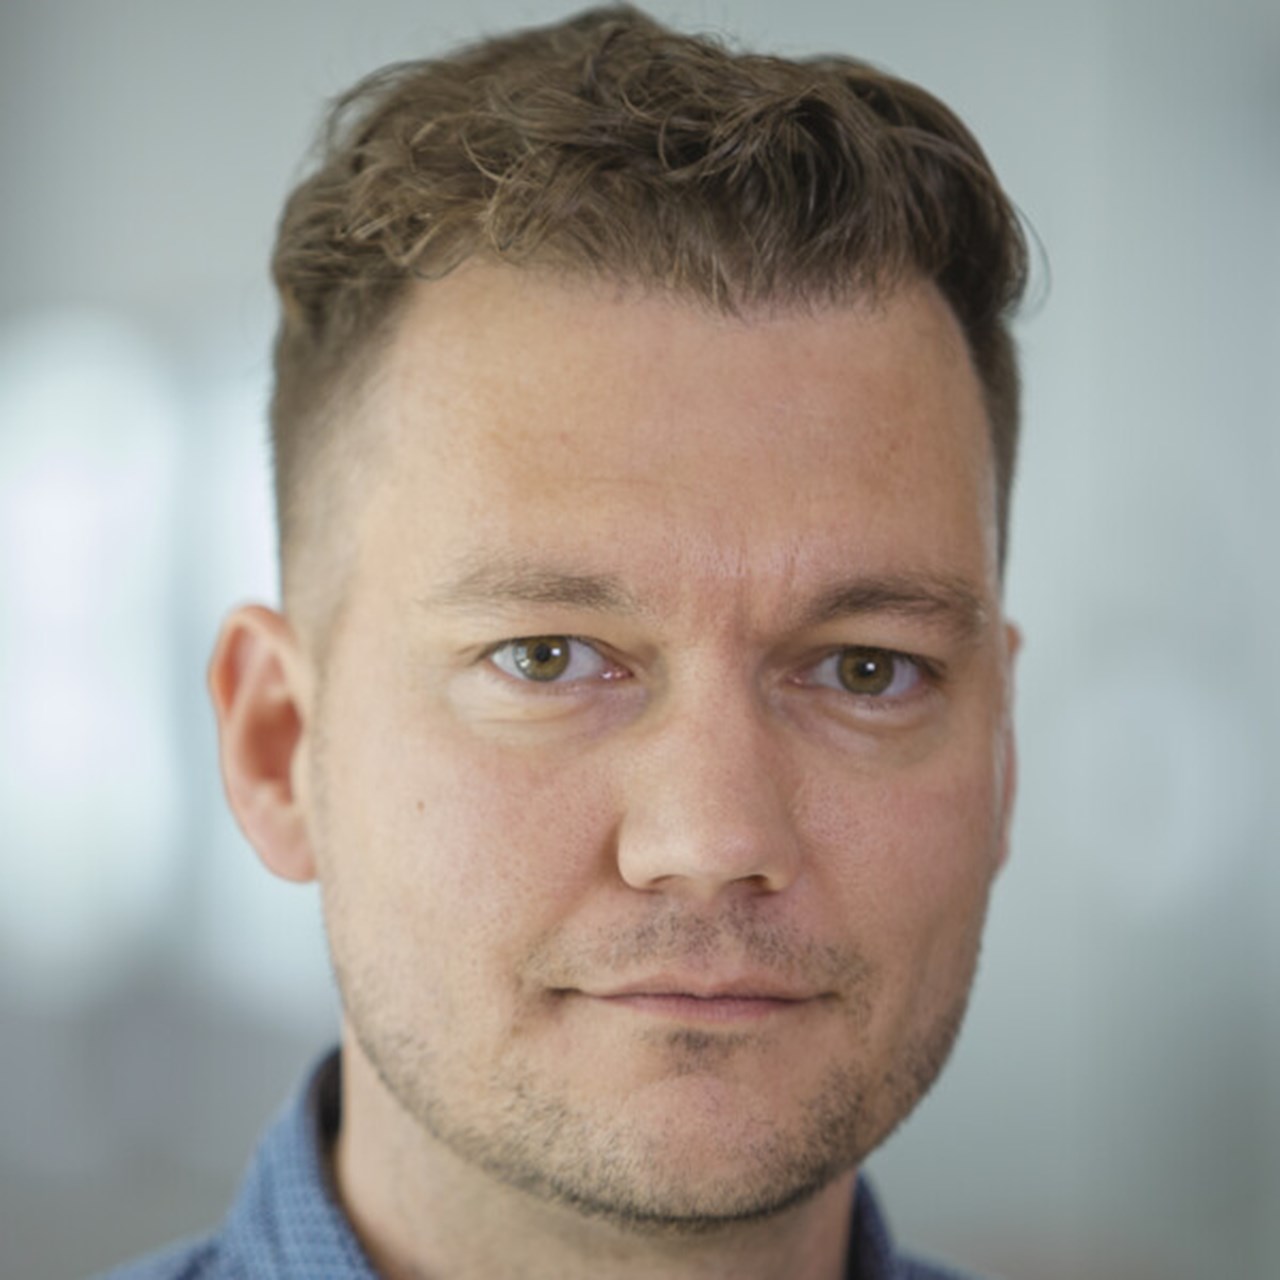 Porträttbild på Daniel Öhlund, Anknuten som biträdande universitetslektor vid Institutionen för strålningsvetenskaper, Umeå universitet.